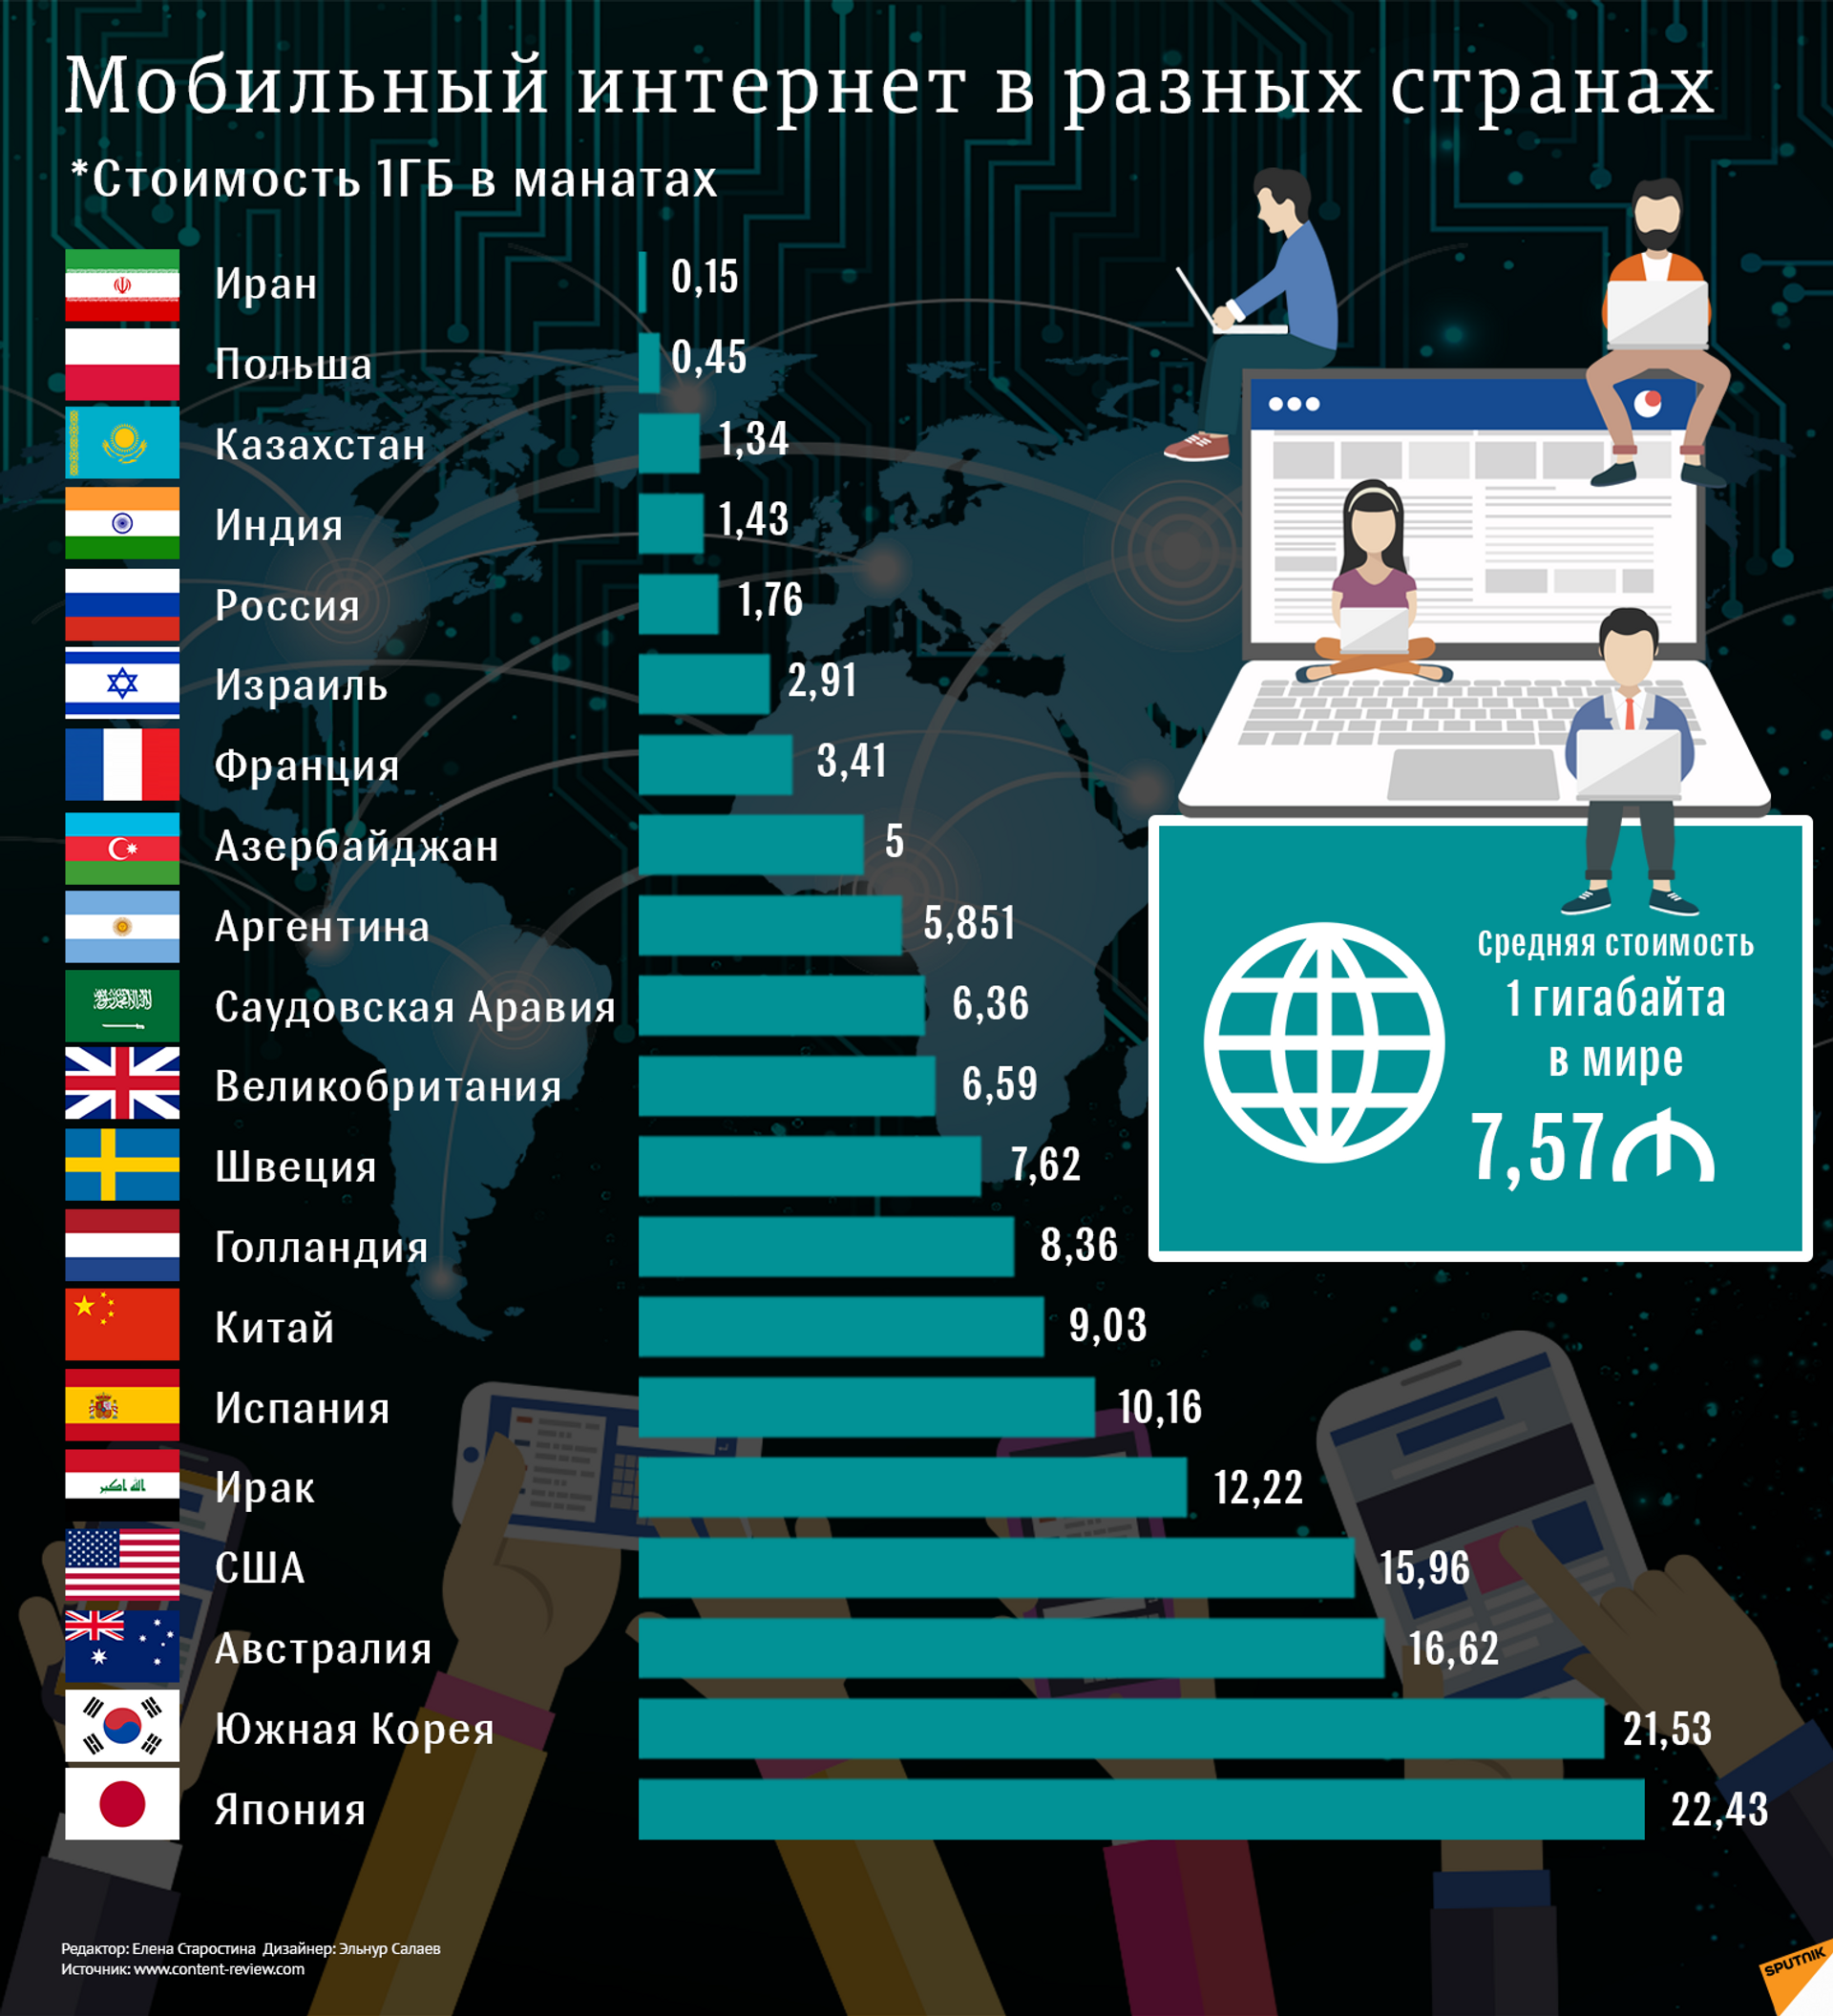 Вфм сколько стран. Стоимость интернета в мире по странам. Самый лучший интернет в мире. Использование интернета в разных странах. Рейтинг разных стран.